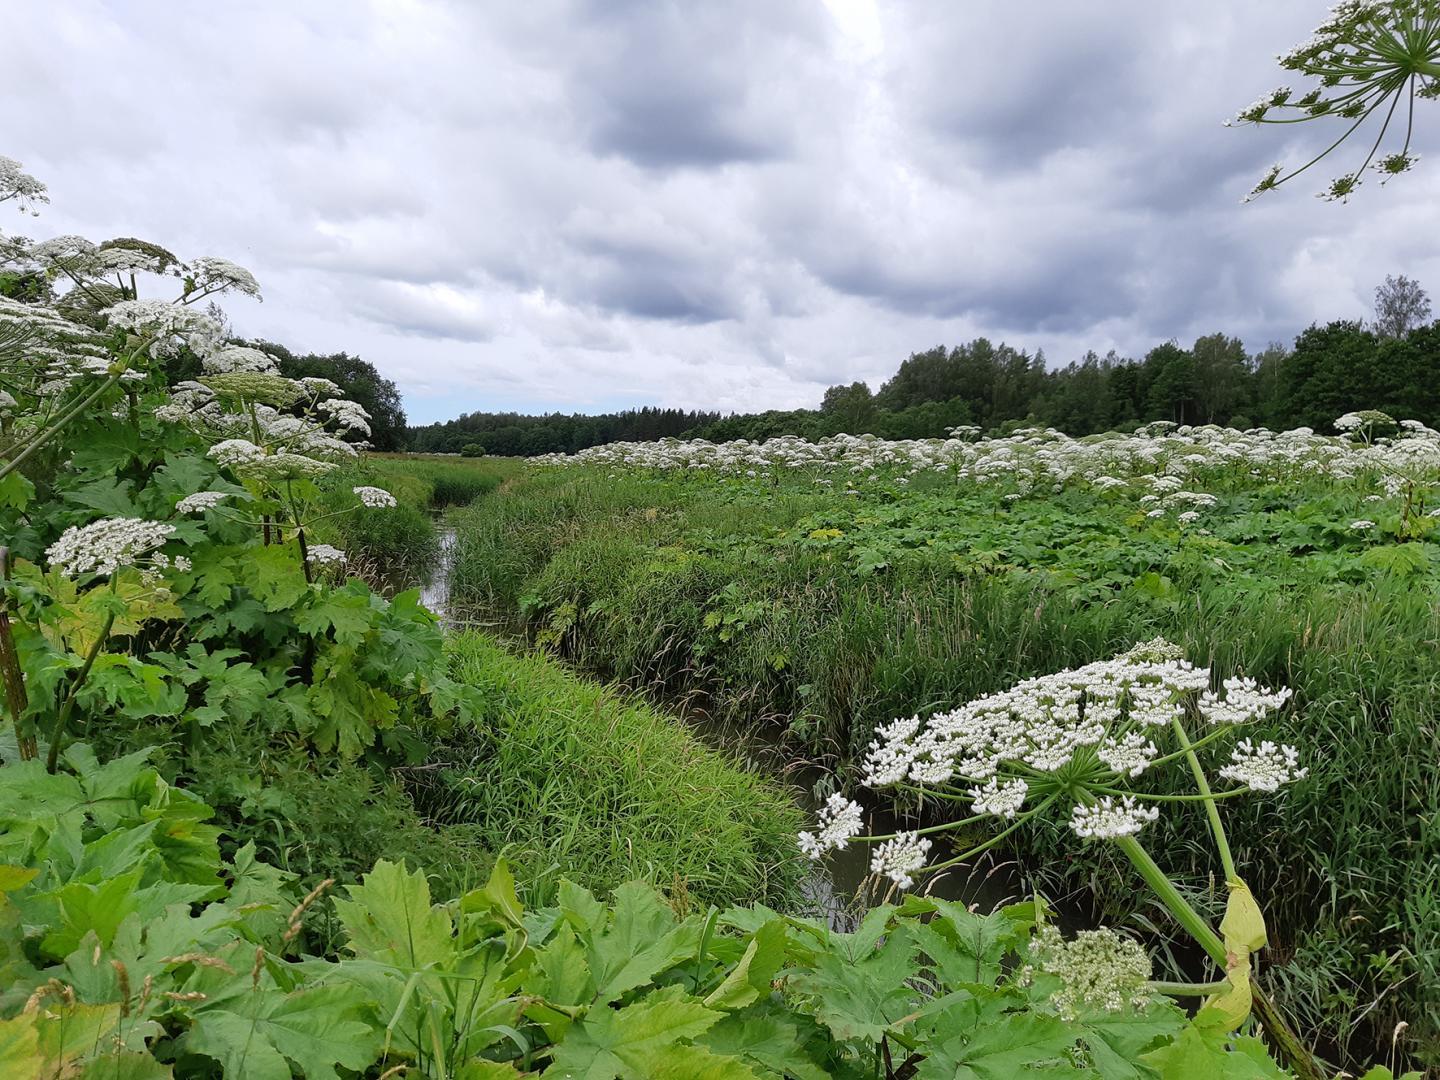 Latvāņi zied baltiem ziediem, tie saauguši abās pusēs upei